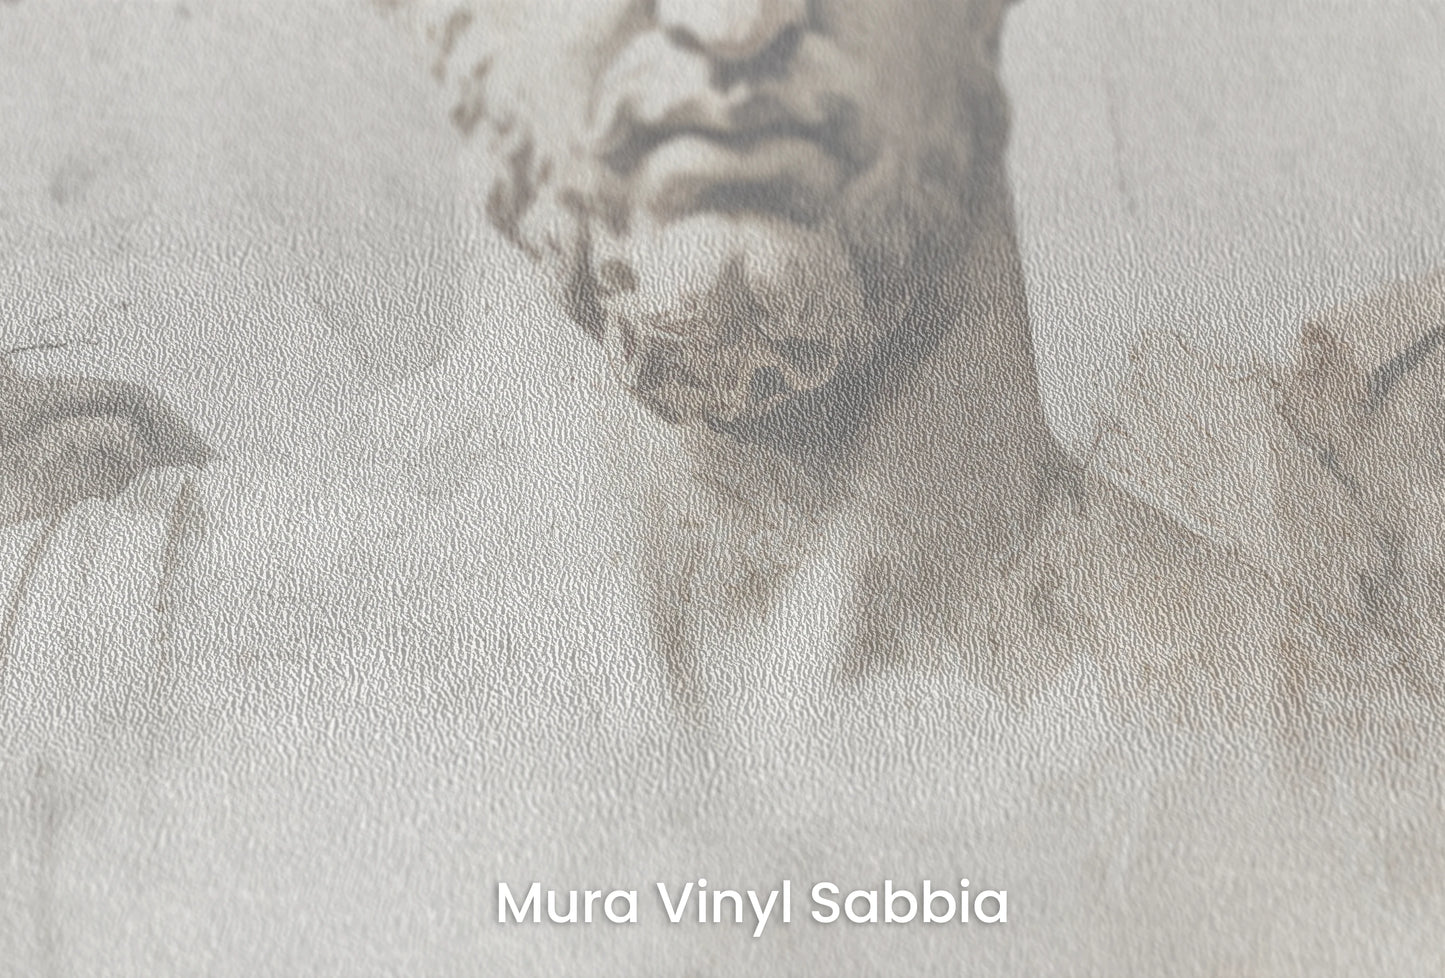 Zbliżenie na artystyczną fototapetę o nazwie Apollo's Melody na podłożu Mura Vinyl Sabbia struktura grubego ziarna piasku.